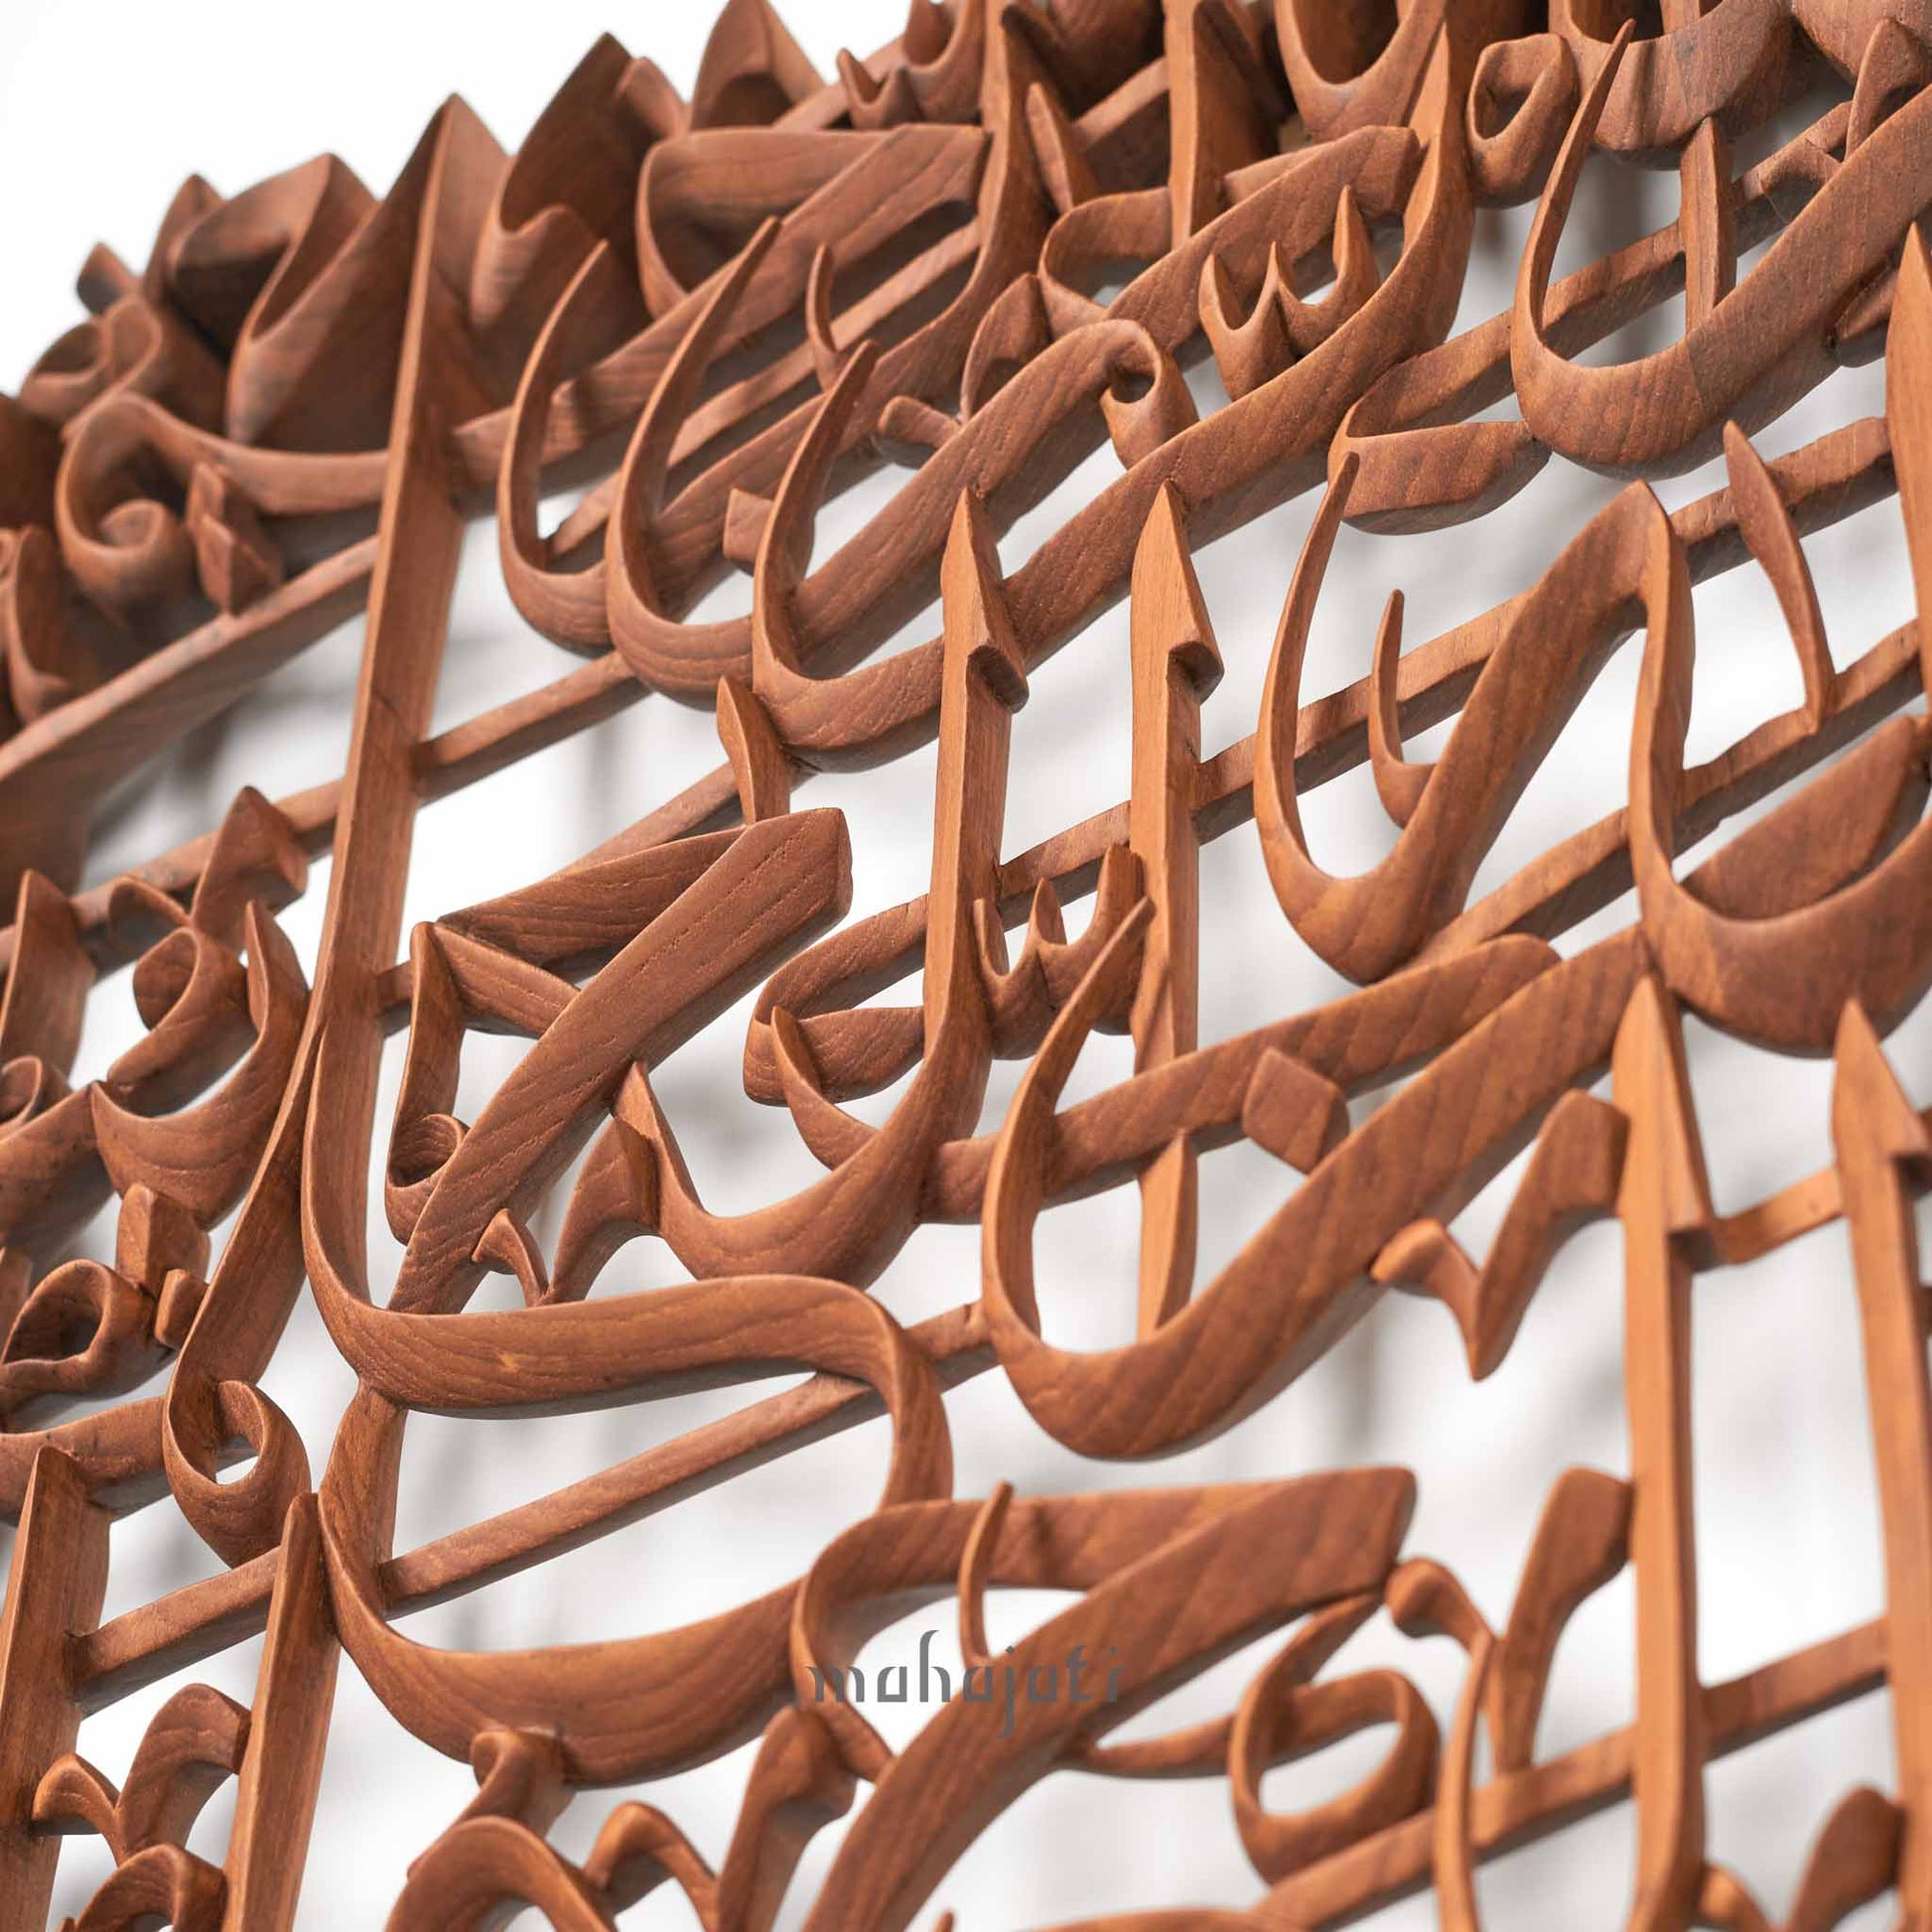 الفاتحة للخط العربي ديكور المنزل